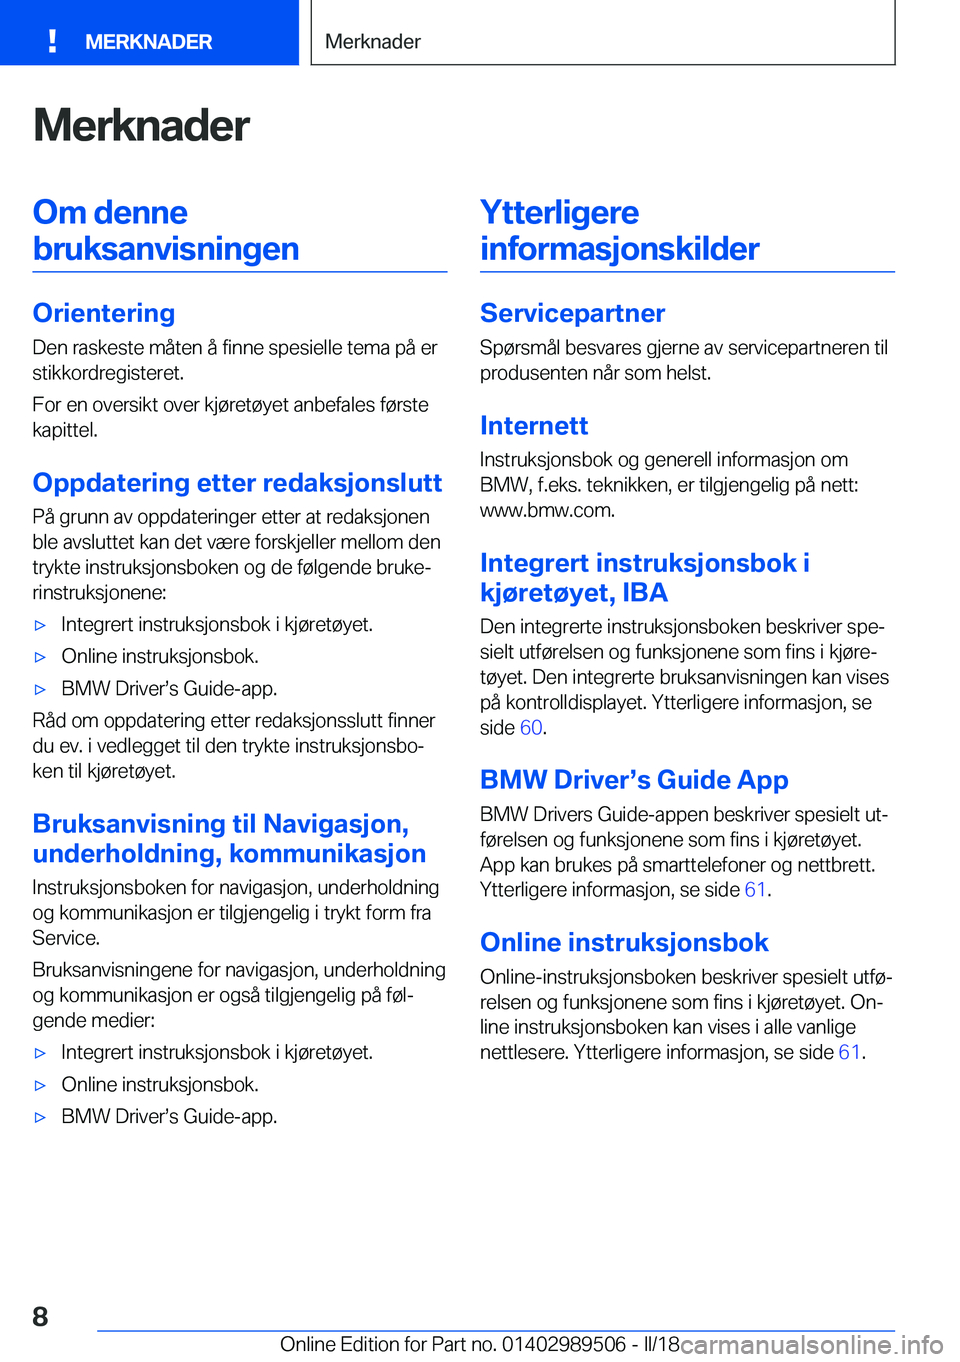 BMW M3 2018  InstruksjonsbØker (in Norwegian) �M�e�r�k�n�a�d�e�r�O�m��d�e�n�n�e�b�r�u�k�s�a�n�v�i�s�n�i�n�g�e�n
�O�r�i�e�n�t�e�r�i�n�g
�D�e�n� �r�a�s�k�e�s�t�e� �m�å�t�e�n� �å� �f�i�n�n�e� �s�p�e�s�i�e�l�l�e� �t�e�m�a� �p�å� �e�r �s�t�i�k�k�o